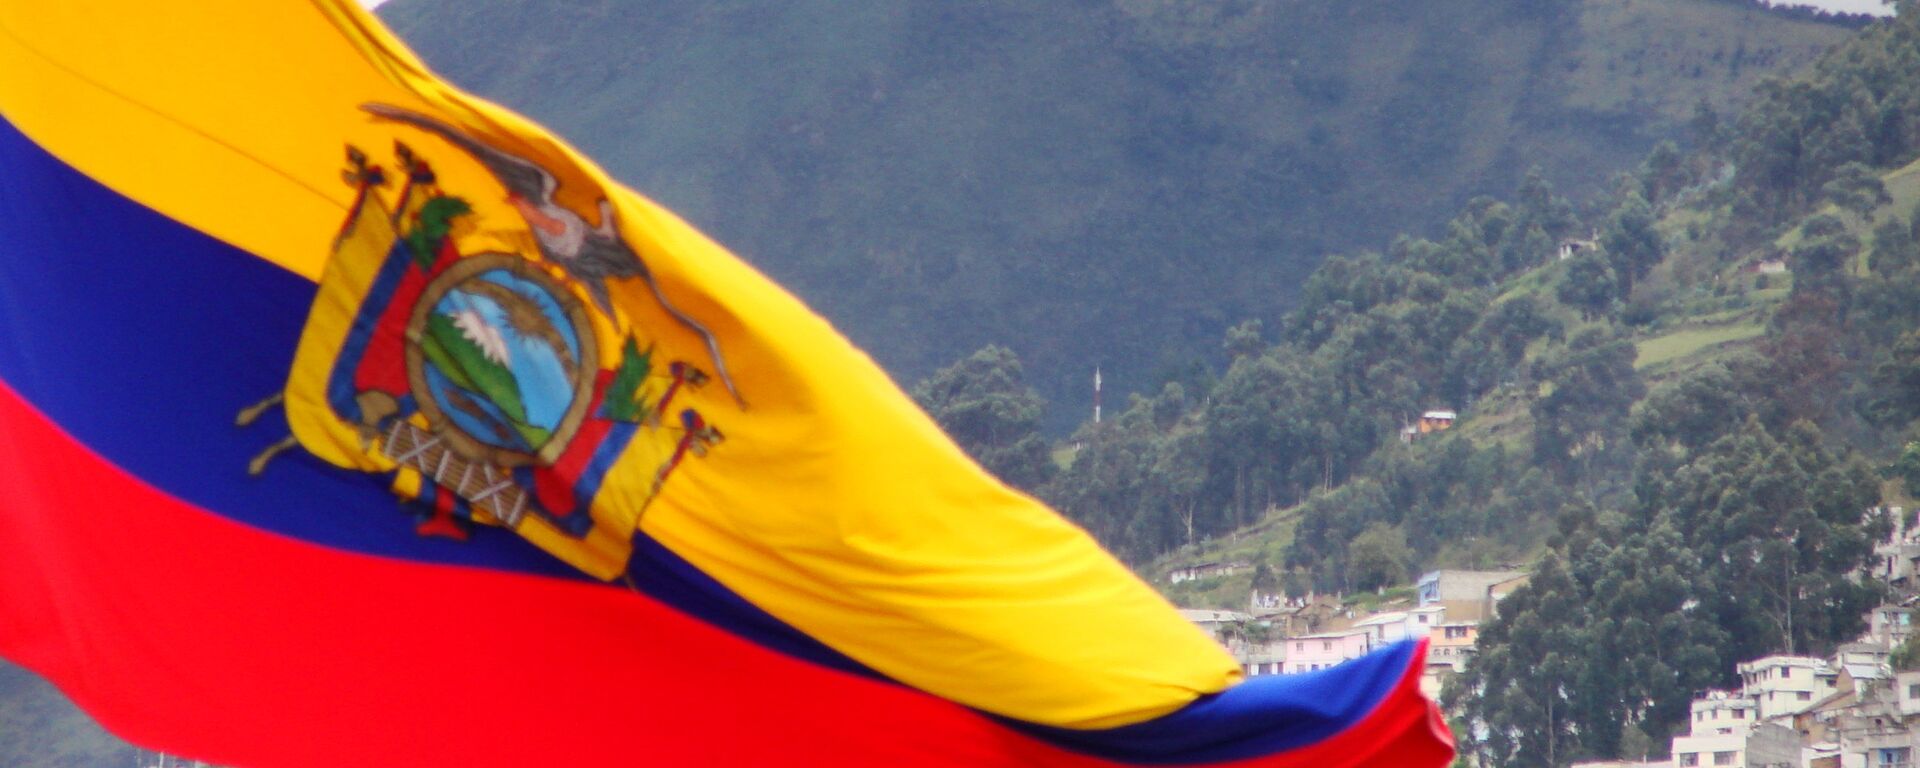 Bandera de Ecuador - Sputnik Mundo, 1920, 05.02.2021